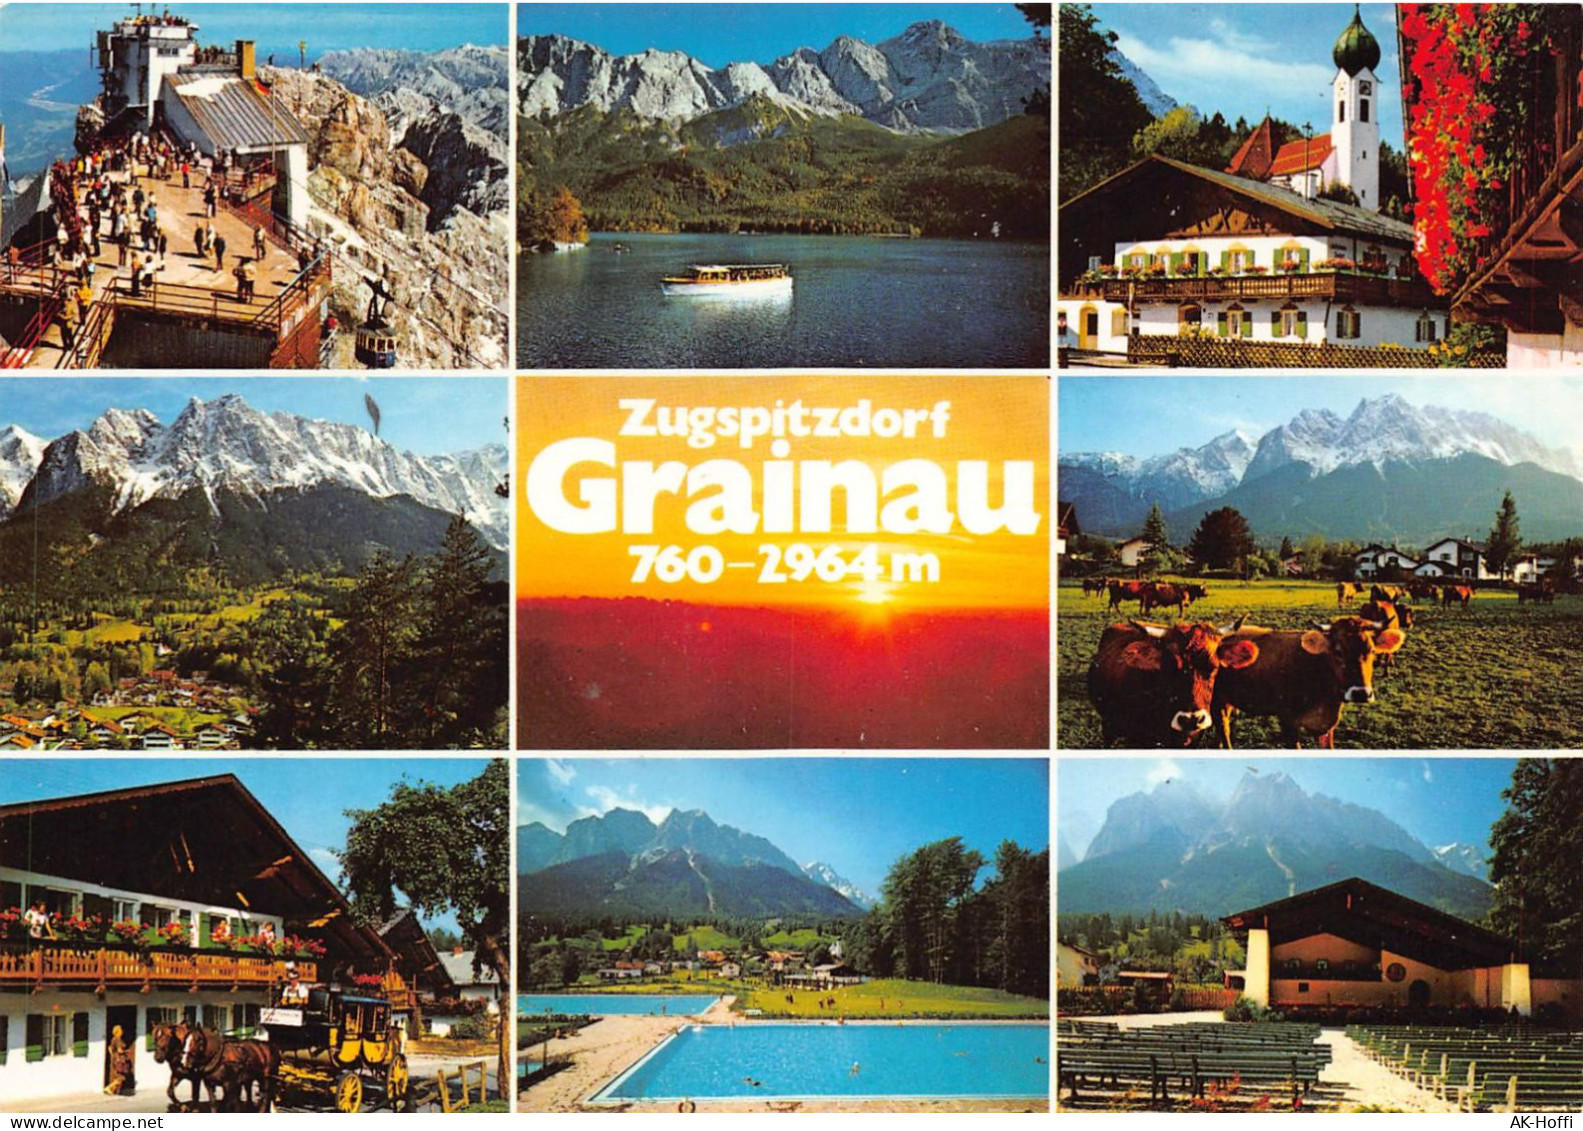 Zugspitzdorf Grainau 760-2964 M (902) - Zugspitze